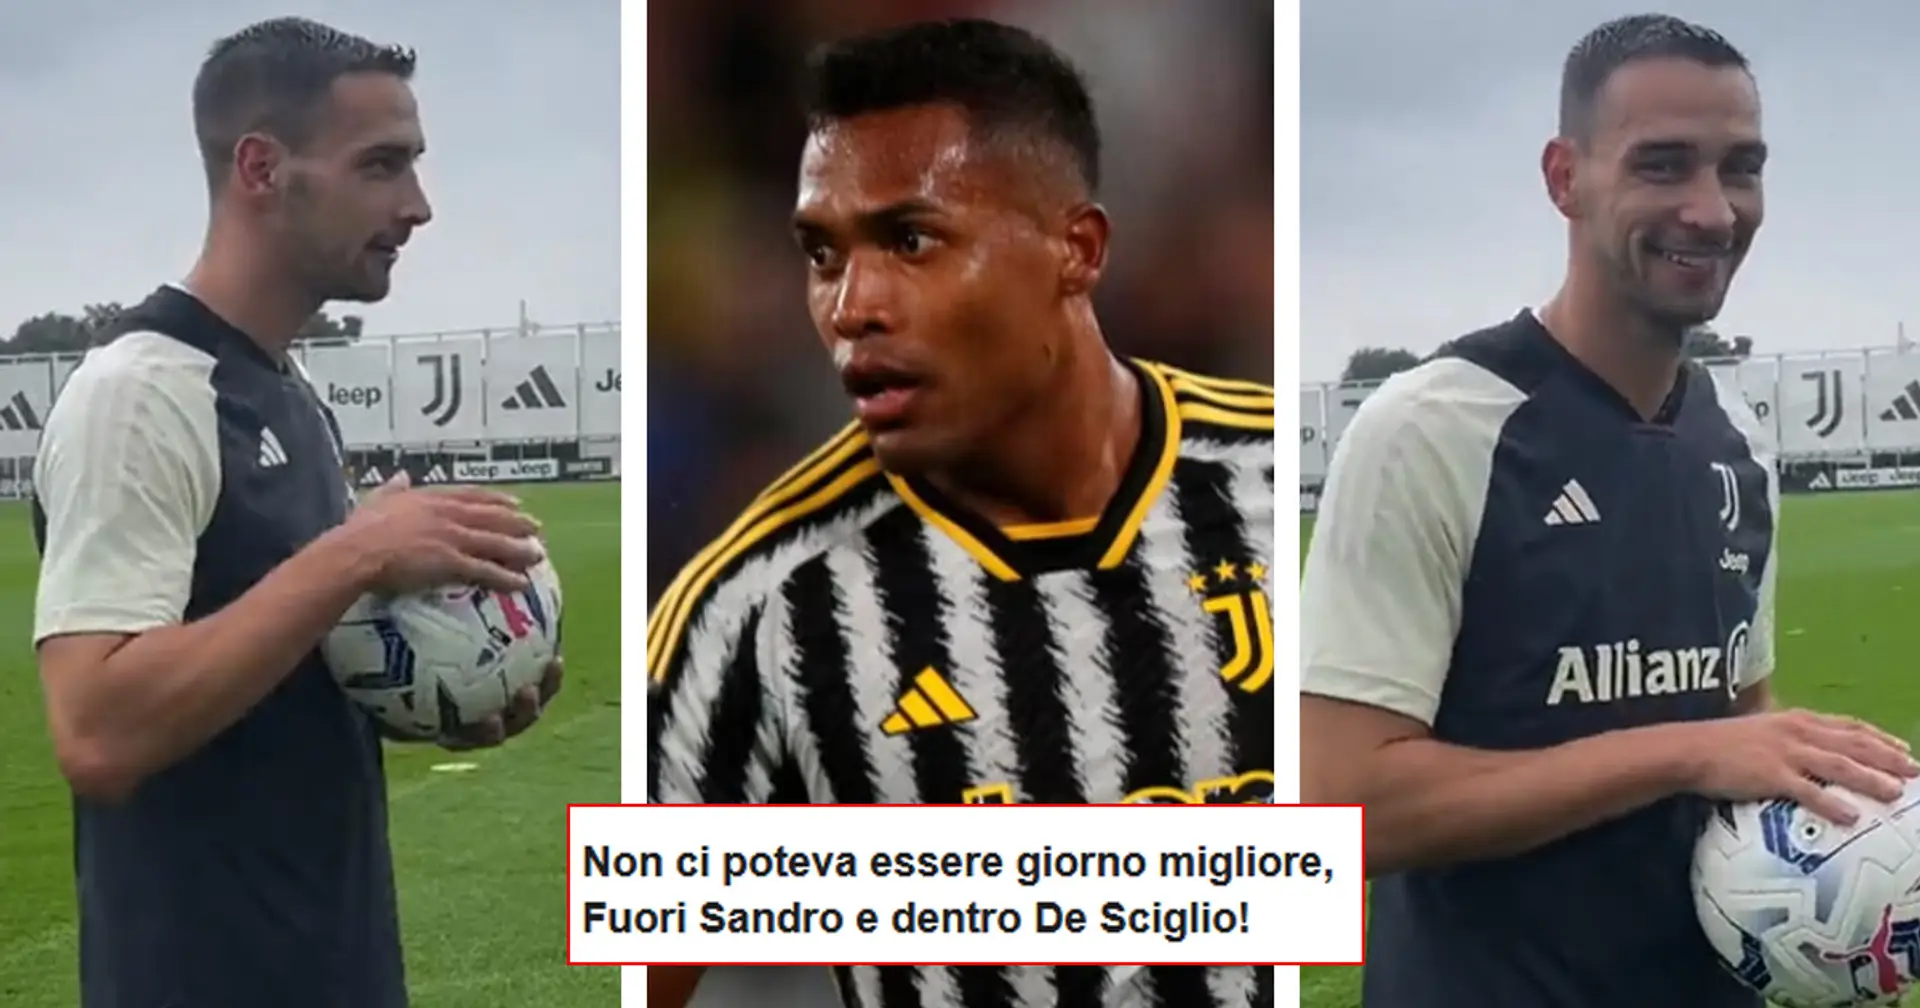 De Sciglio si avvicina al ritorno in campo, scoppia l'ironia dei tifosi: "Subito fuori Alex Sandro!"